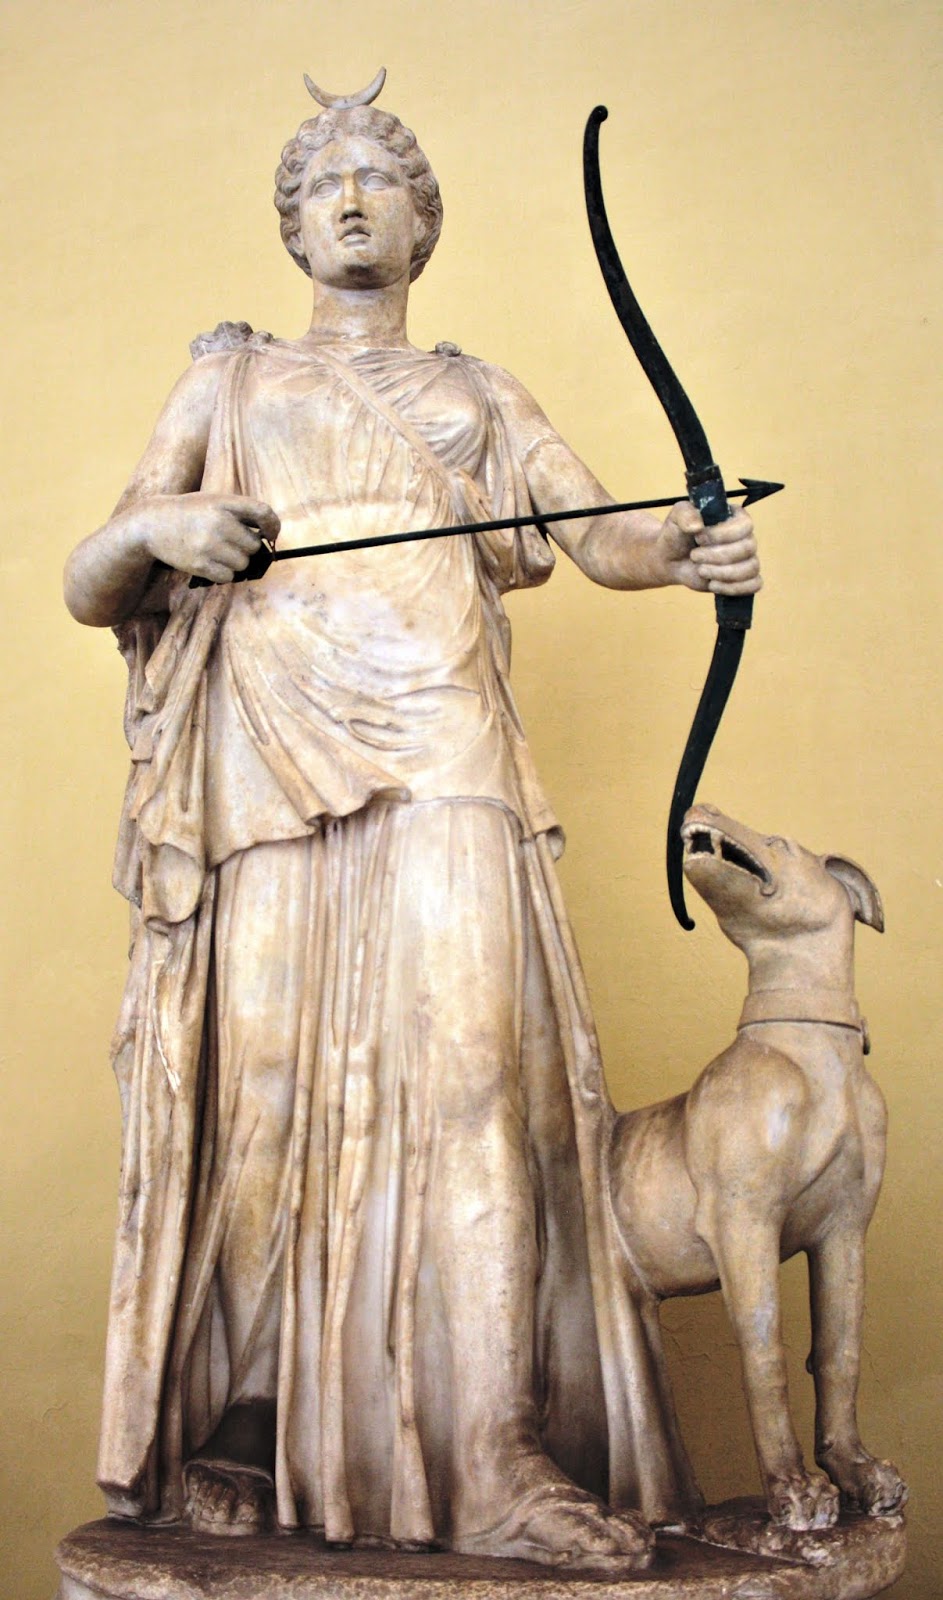 Римская богиня покровительница